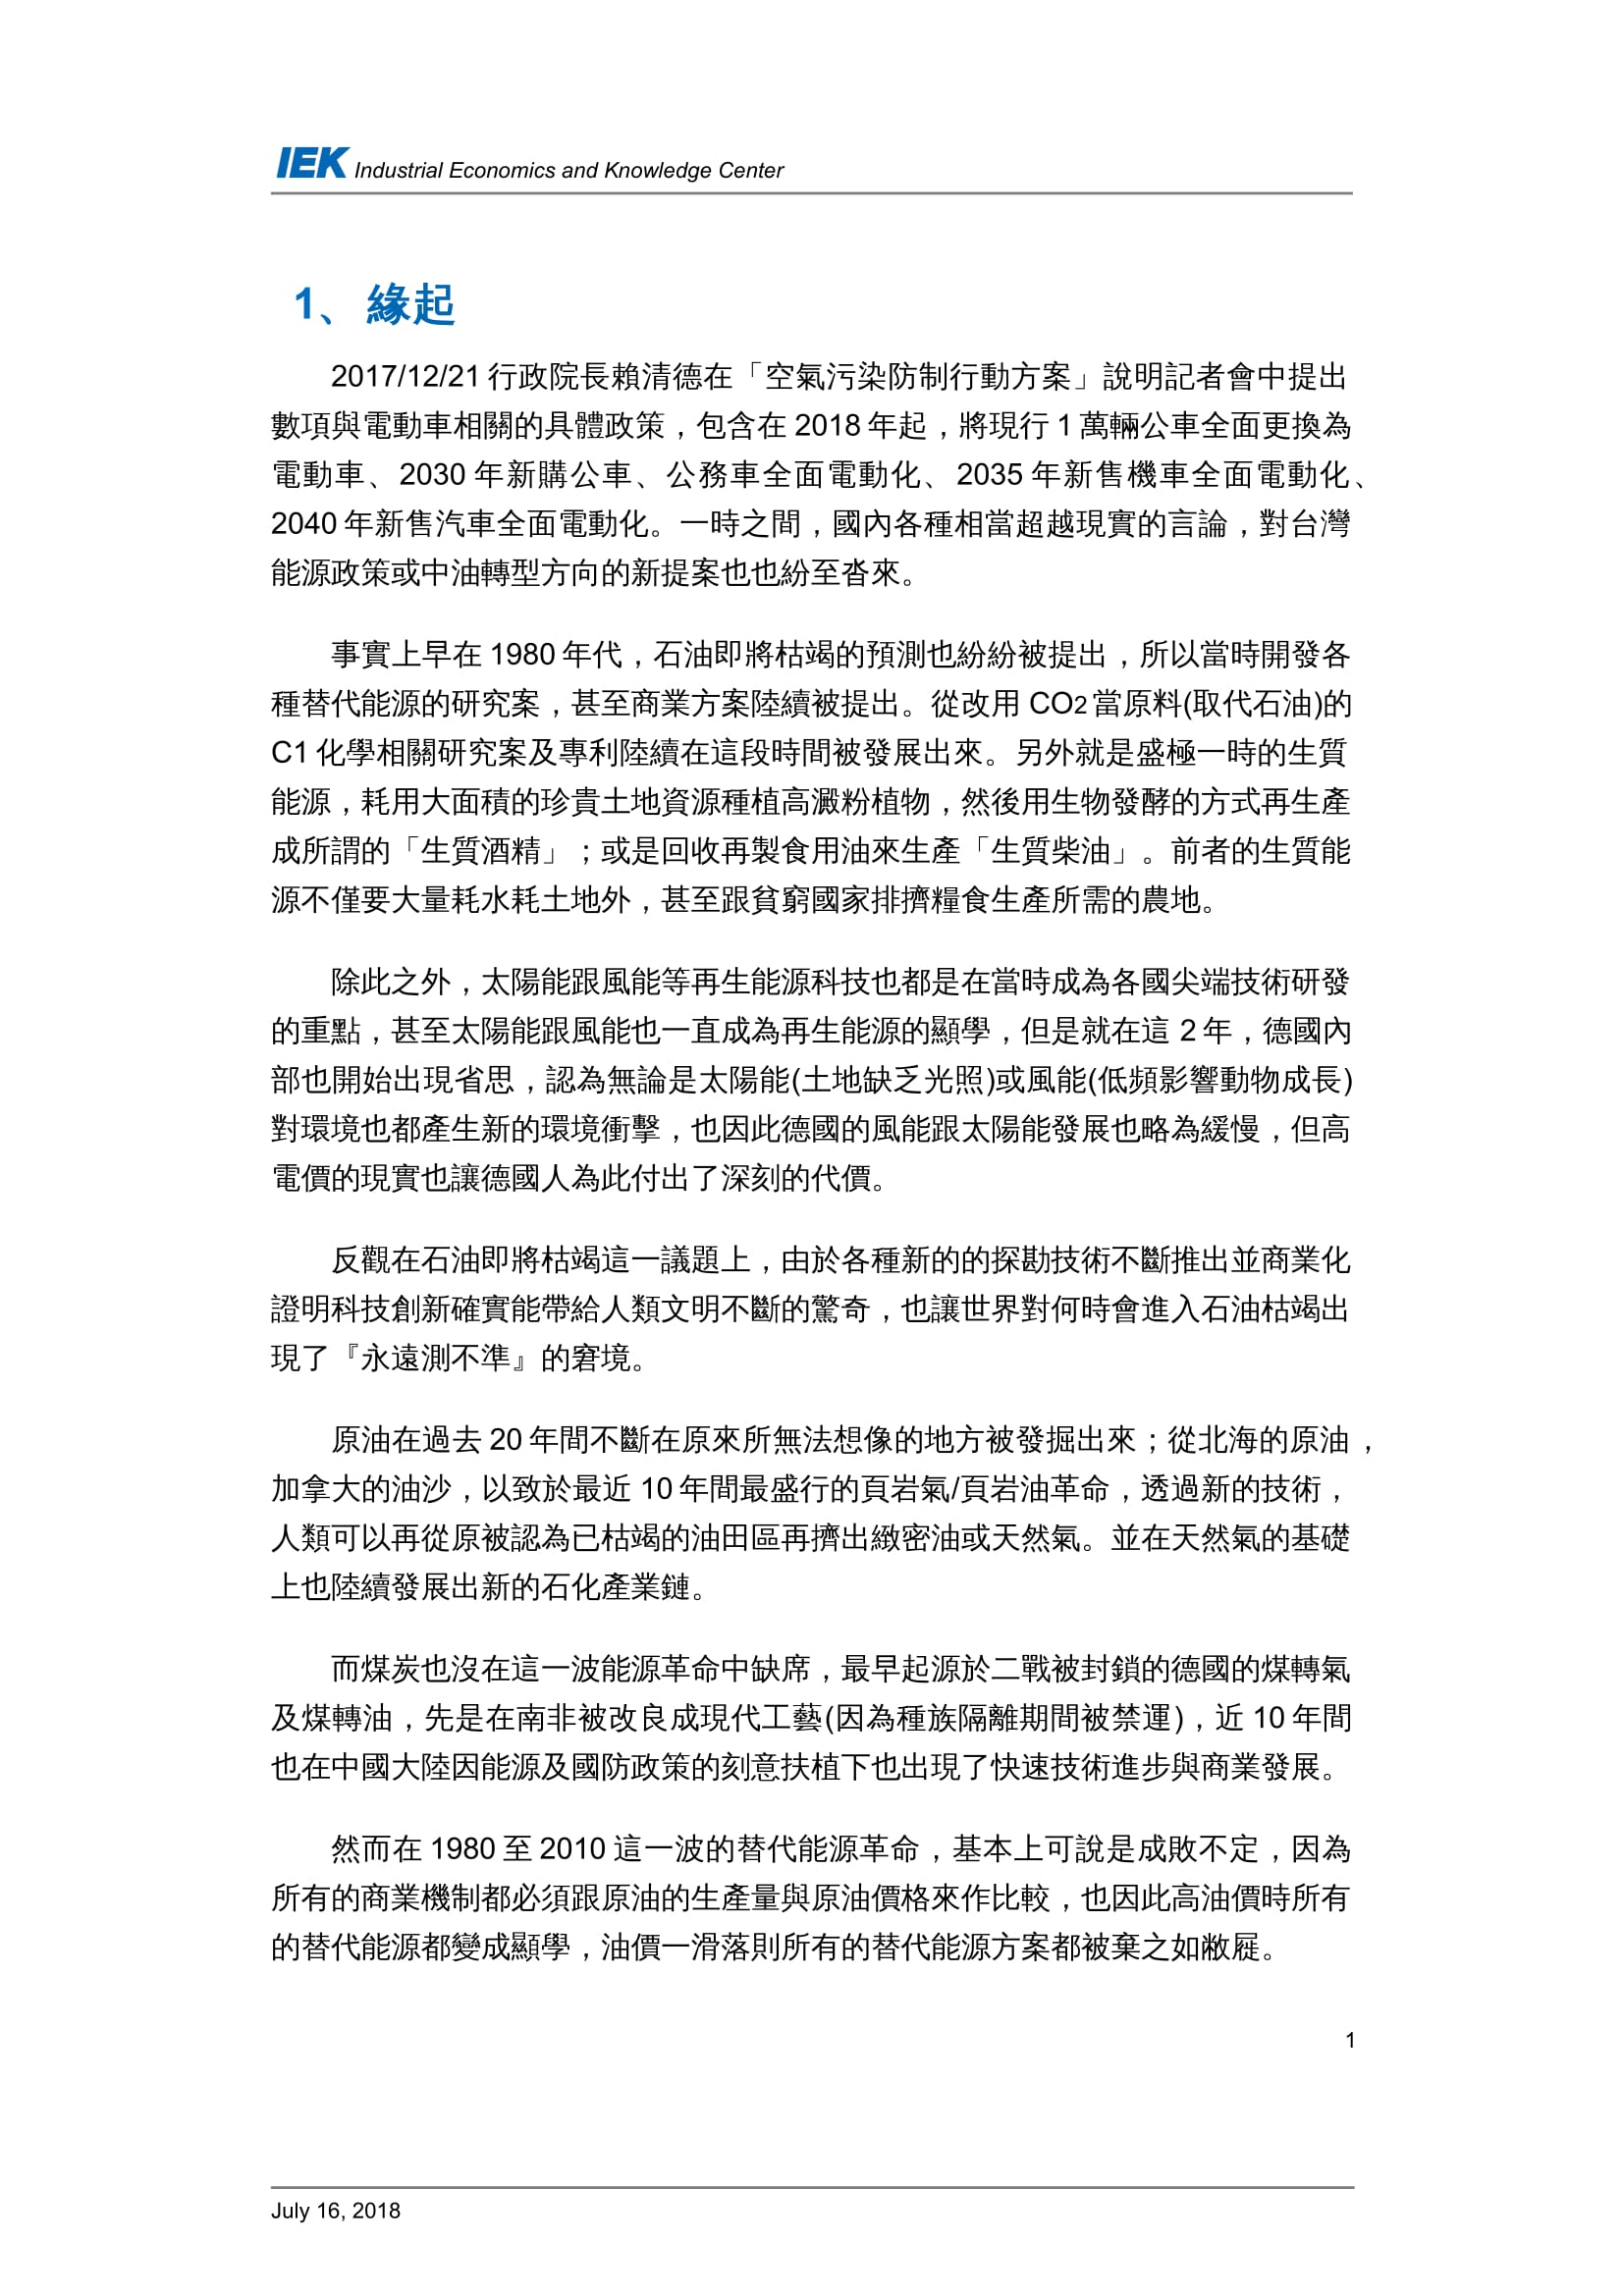 從國外石油產業的轉型看台灣中油的轉型策略_共11頁_第3頁內文(詳如下方附件)